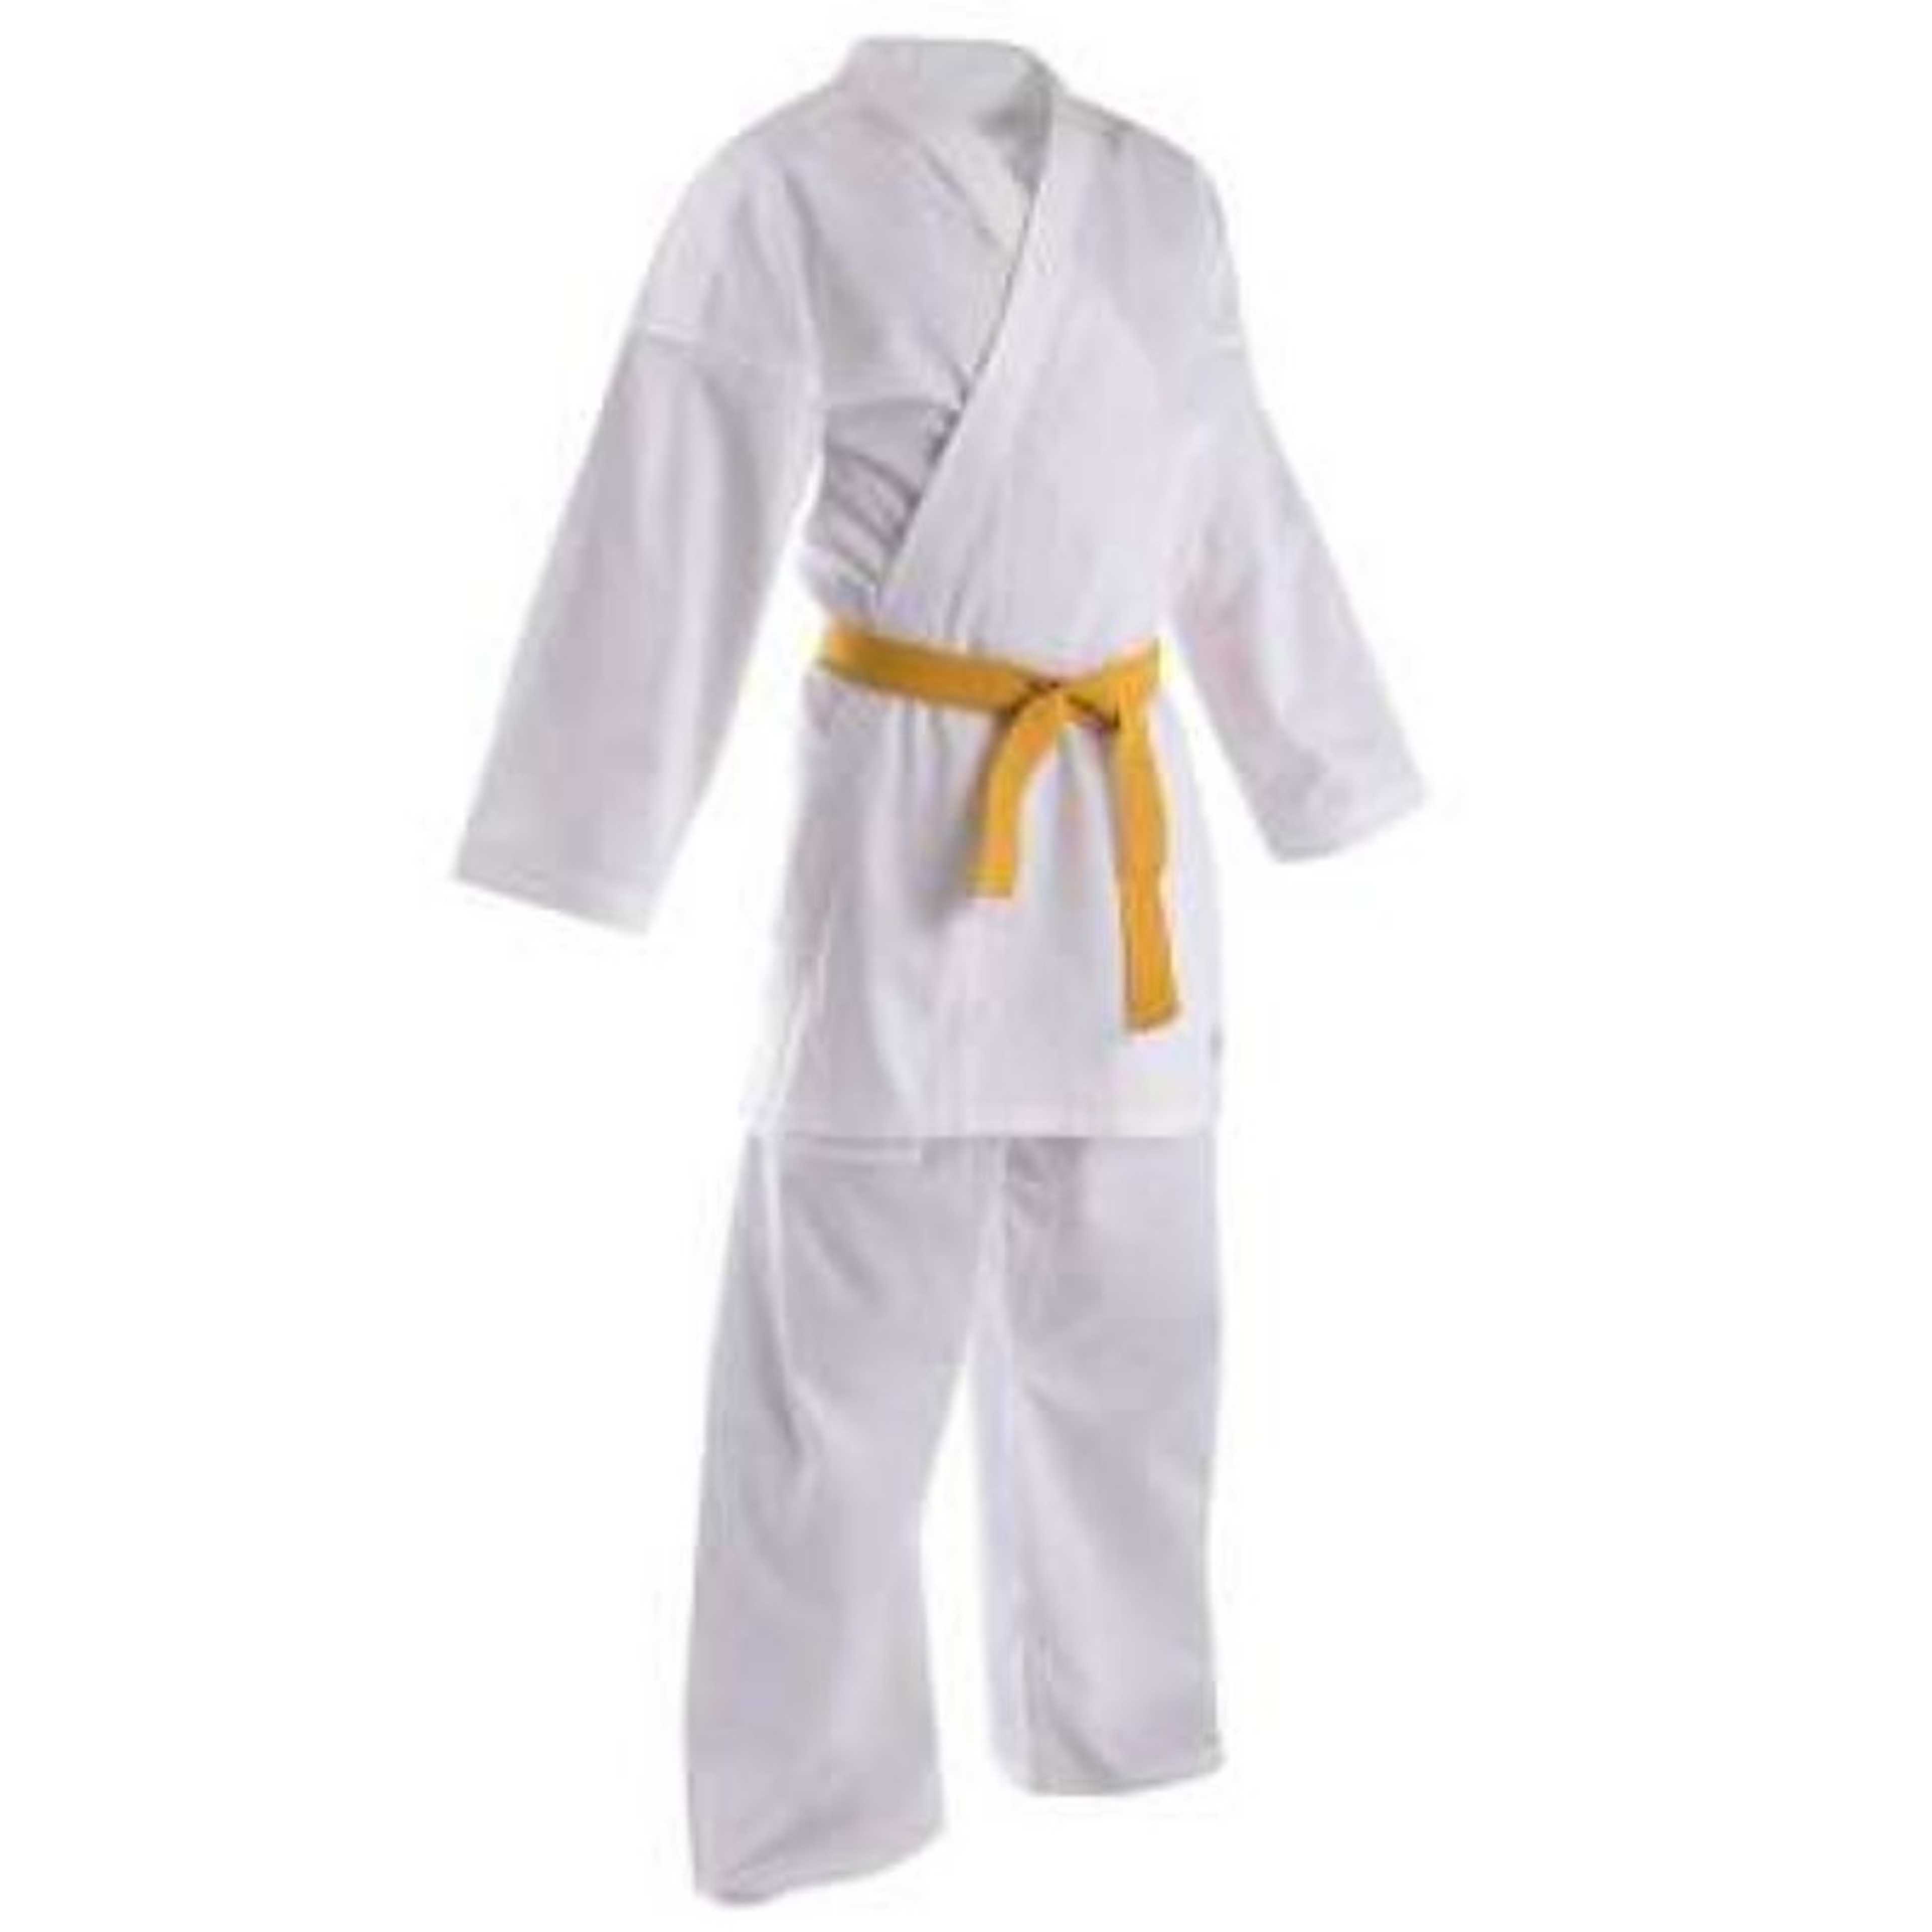 Taekwondo Dress Kits No 0 with Yellow Belt